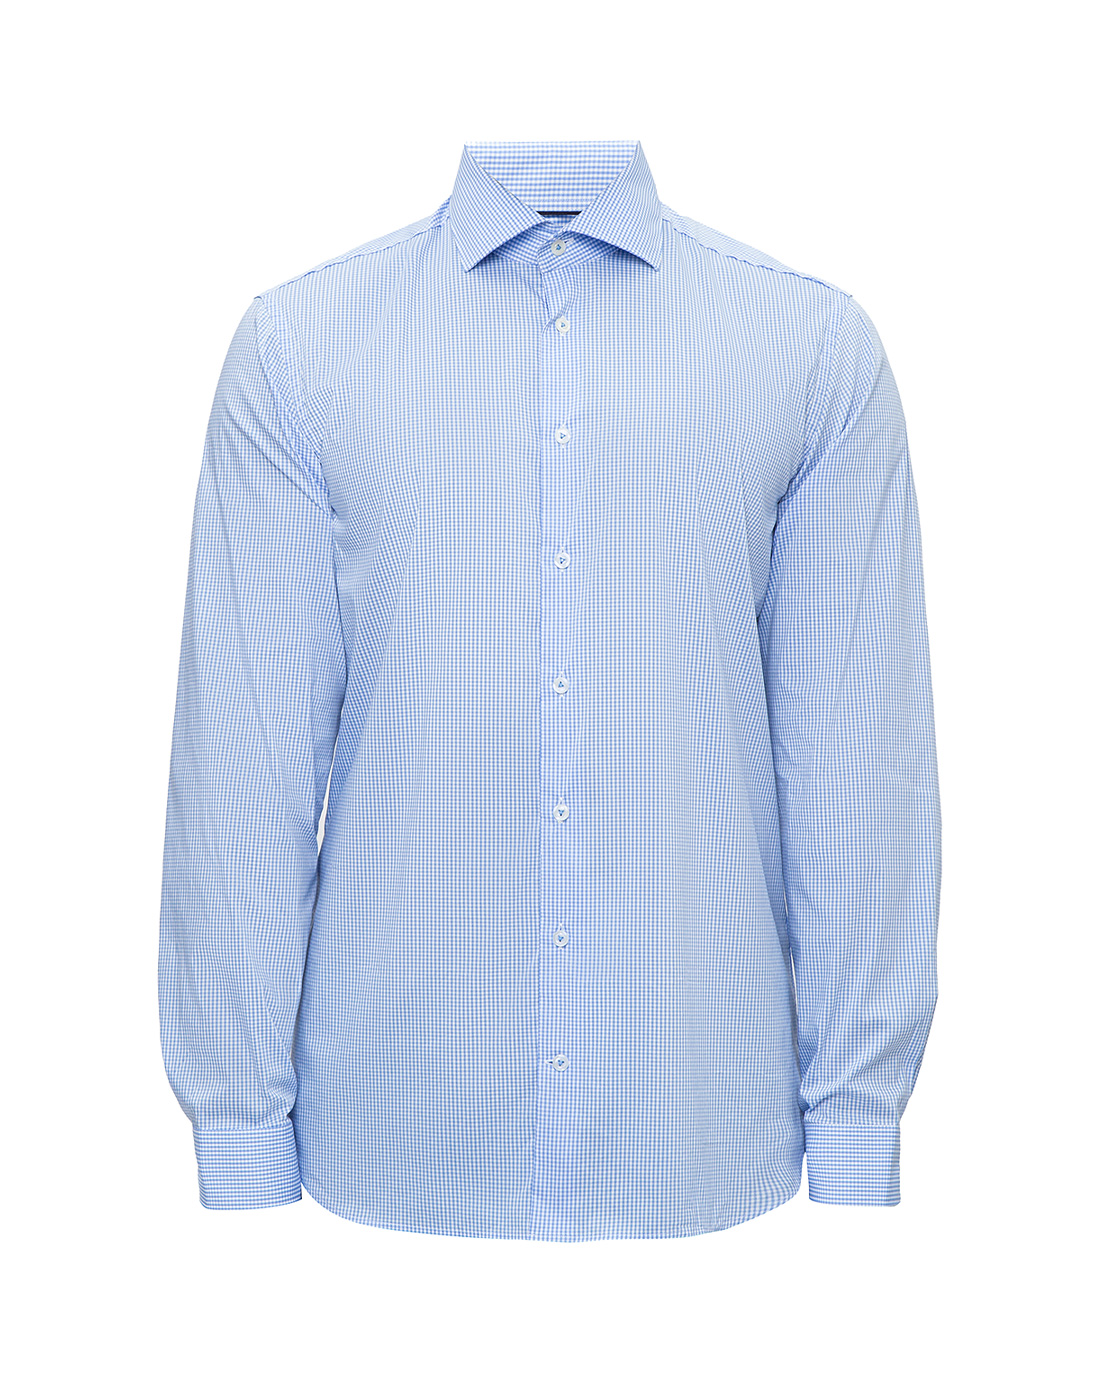 Мужская голубая рубашка в клетку Van Laack S151066/720-1